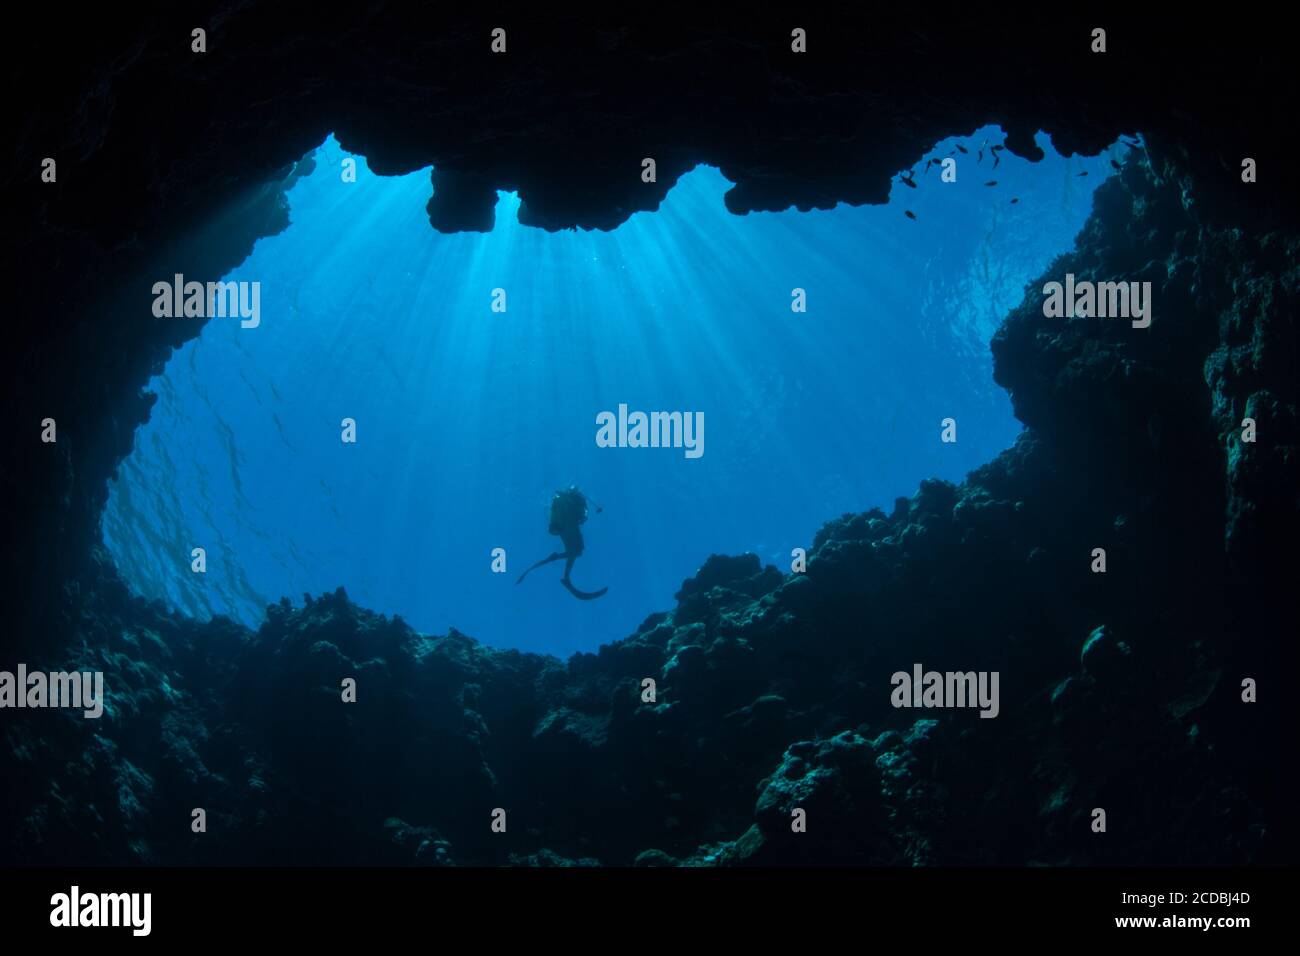 Sonnenlicht dringt in eine dunkle Unterwasserhöhle in der Republik Palau ein. Palau's spektakuläre und vielfältige Korallenriffe sind durchsetzt von Höhlen und Höhlen. Stockfoto